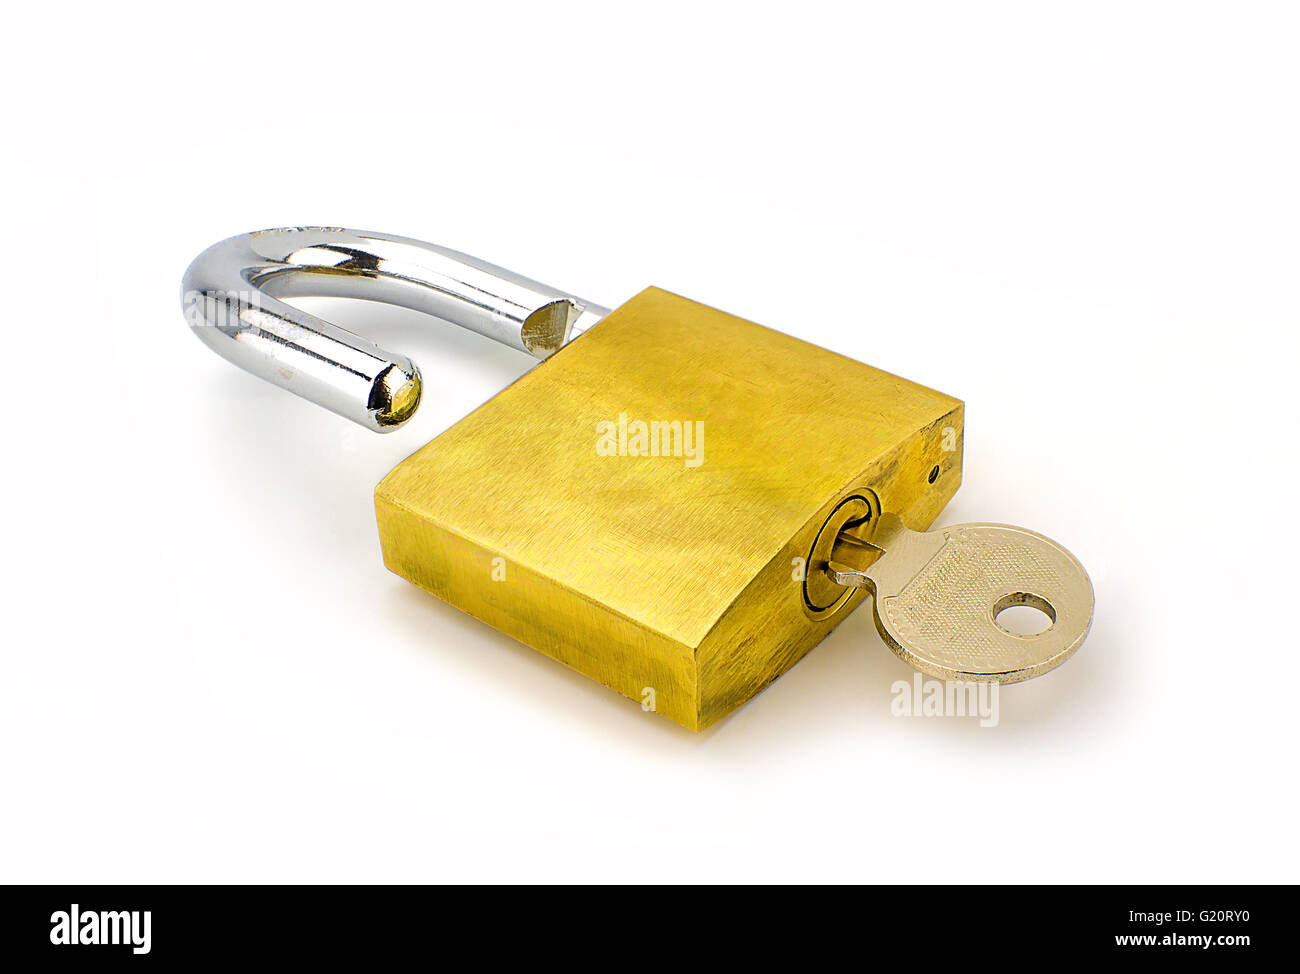 Unlocked padlock with the key on white background Stock Photo